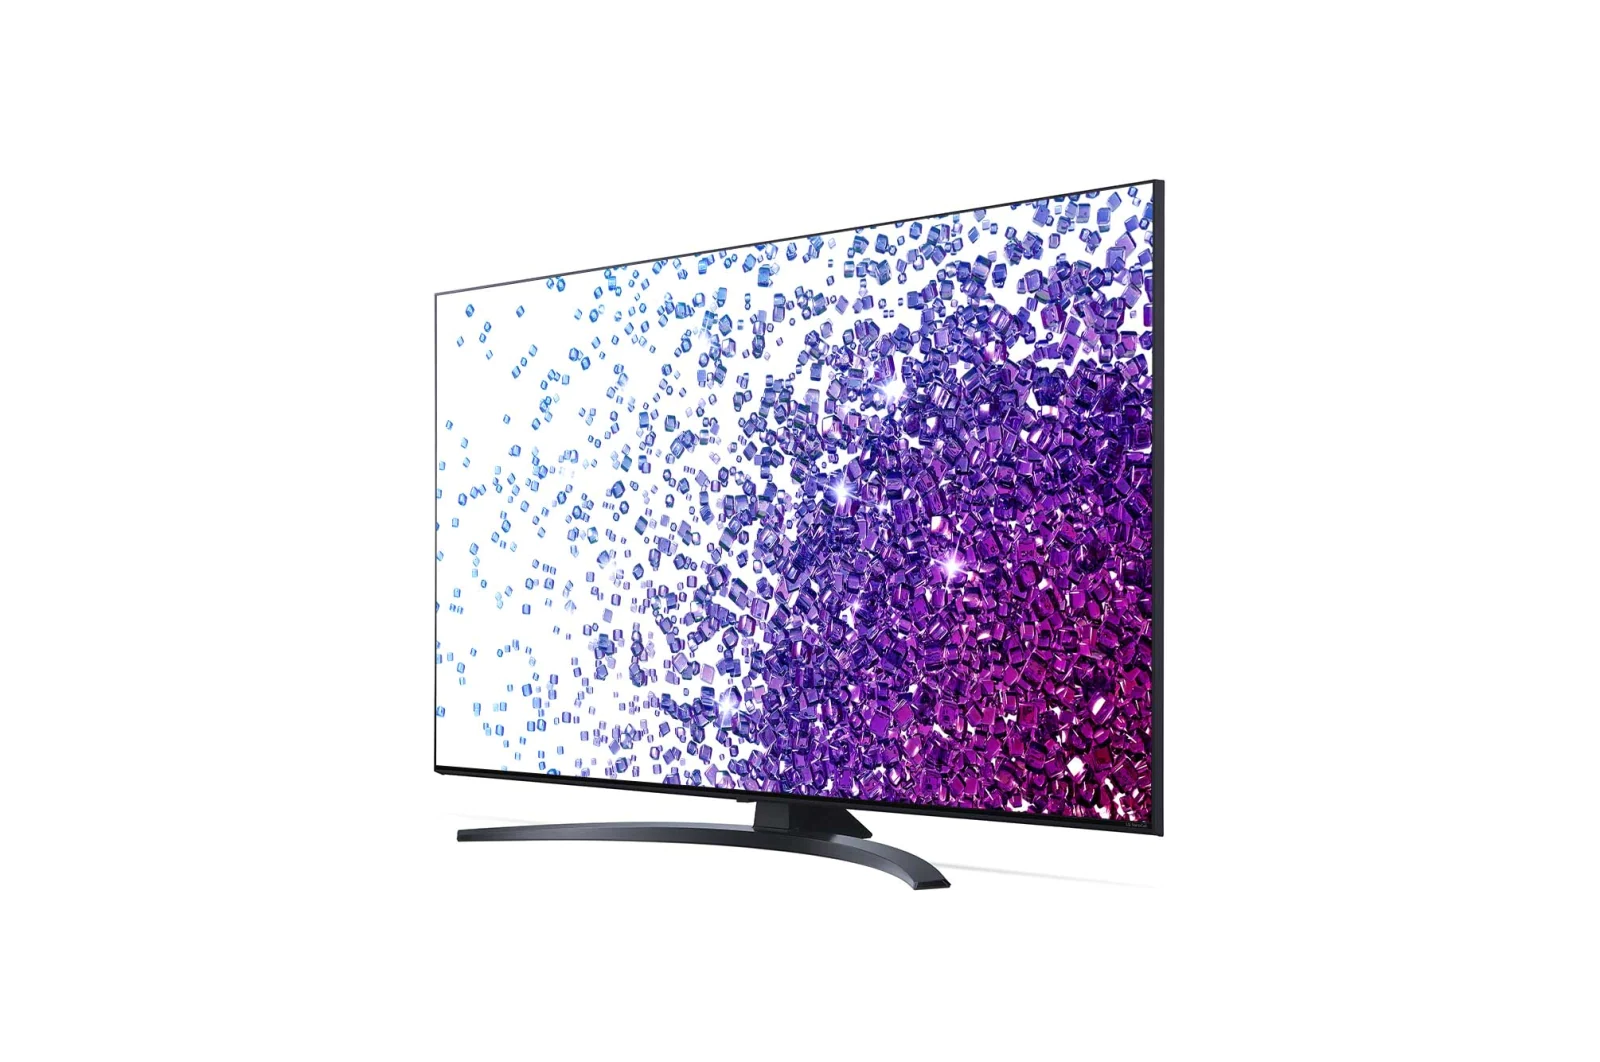 55” AI ThinQ 4K LG NanoCell TV – Nano76 - 55NANO76CPA